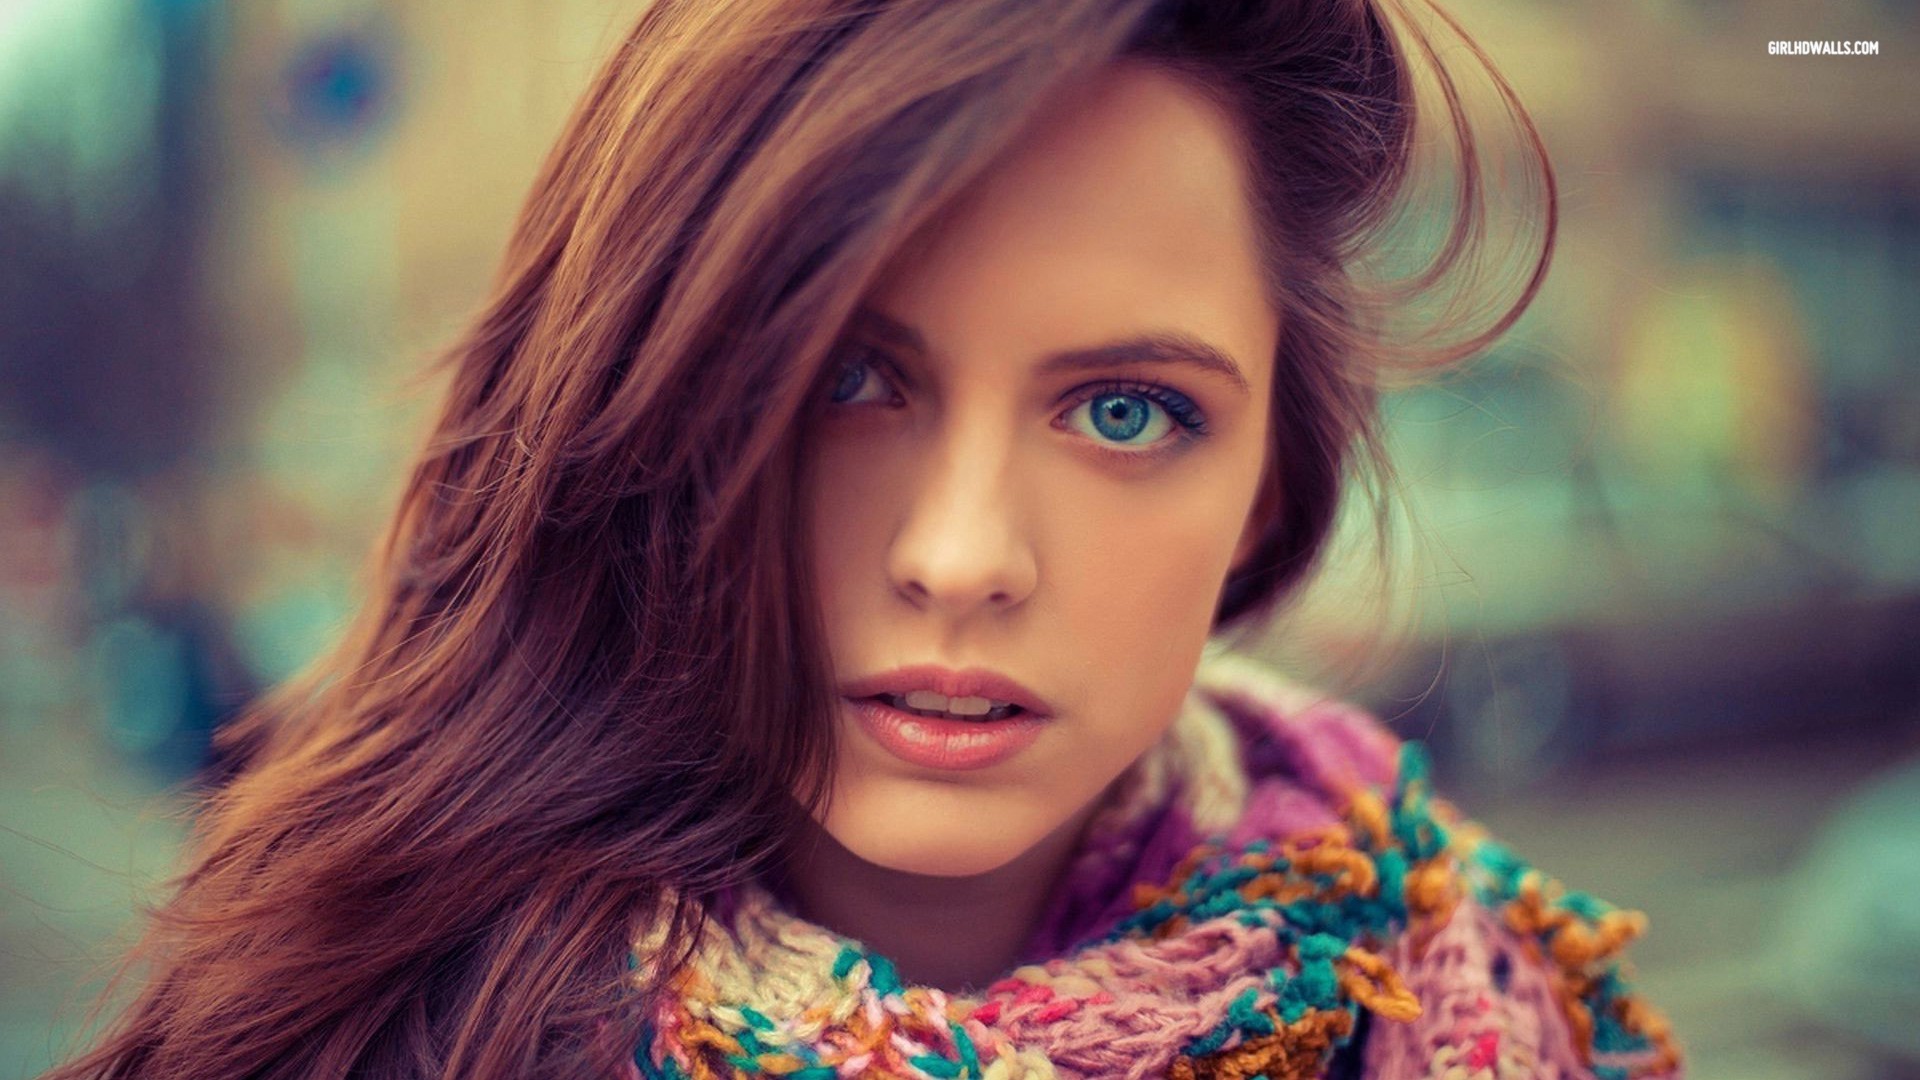 Brunette Blue Eyes Women Model Women Outdoors Face Long Hair Portrait Closeup Makeup